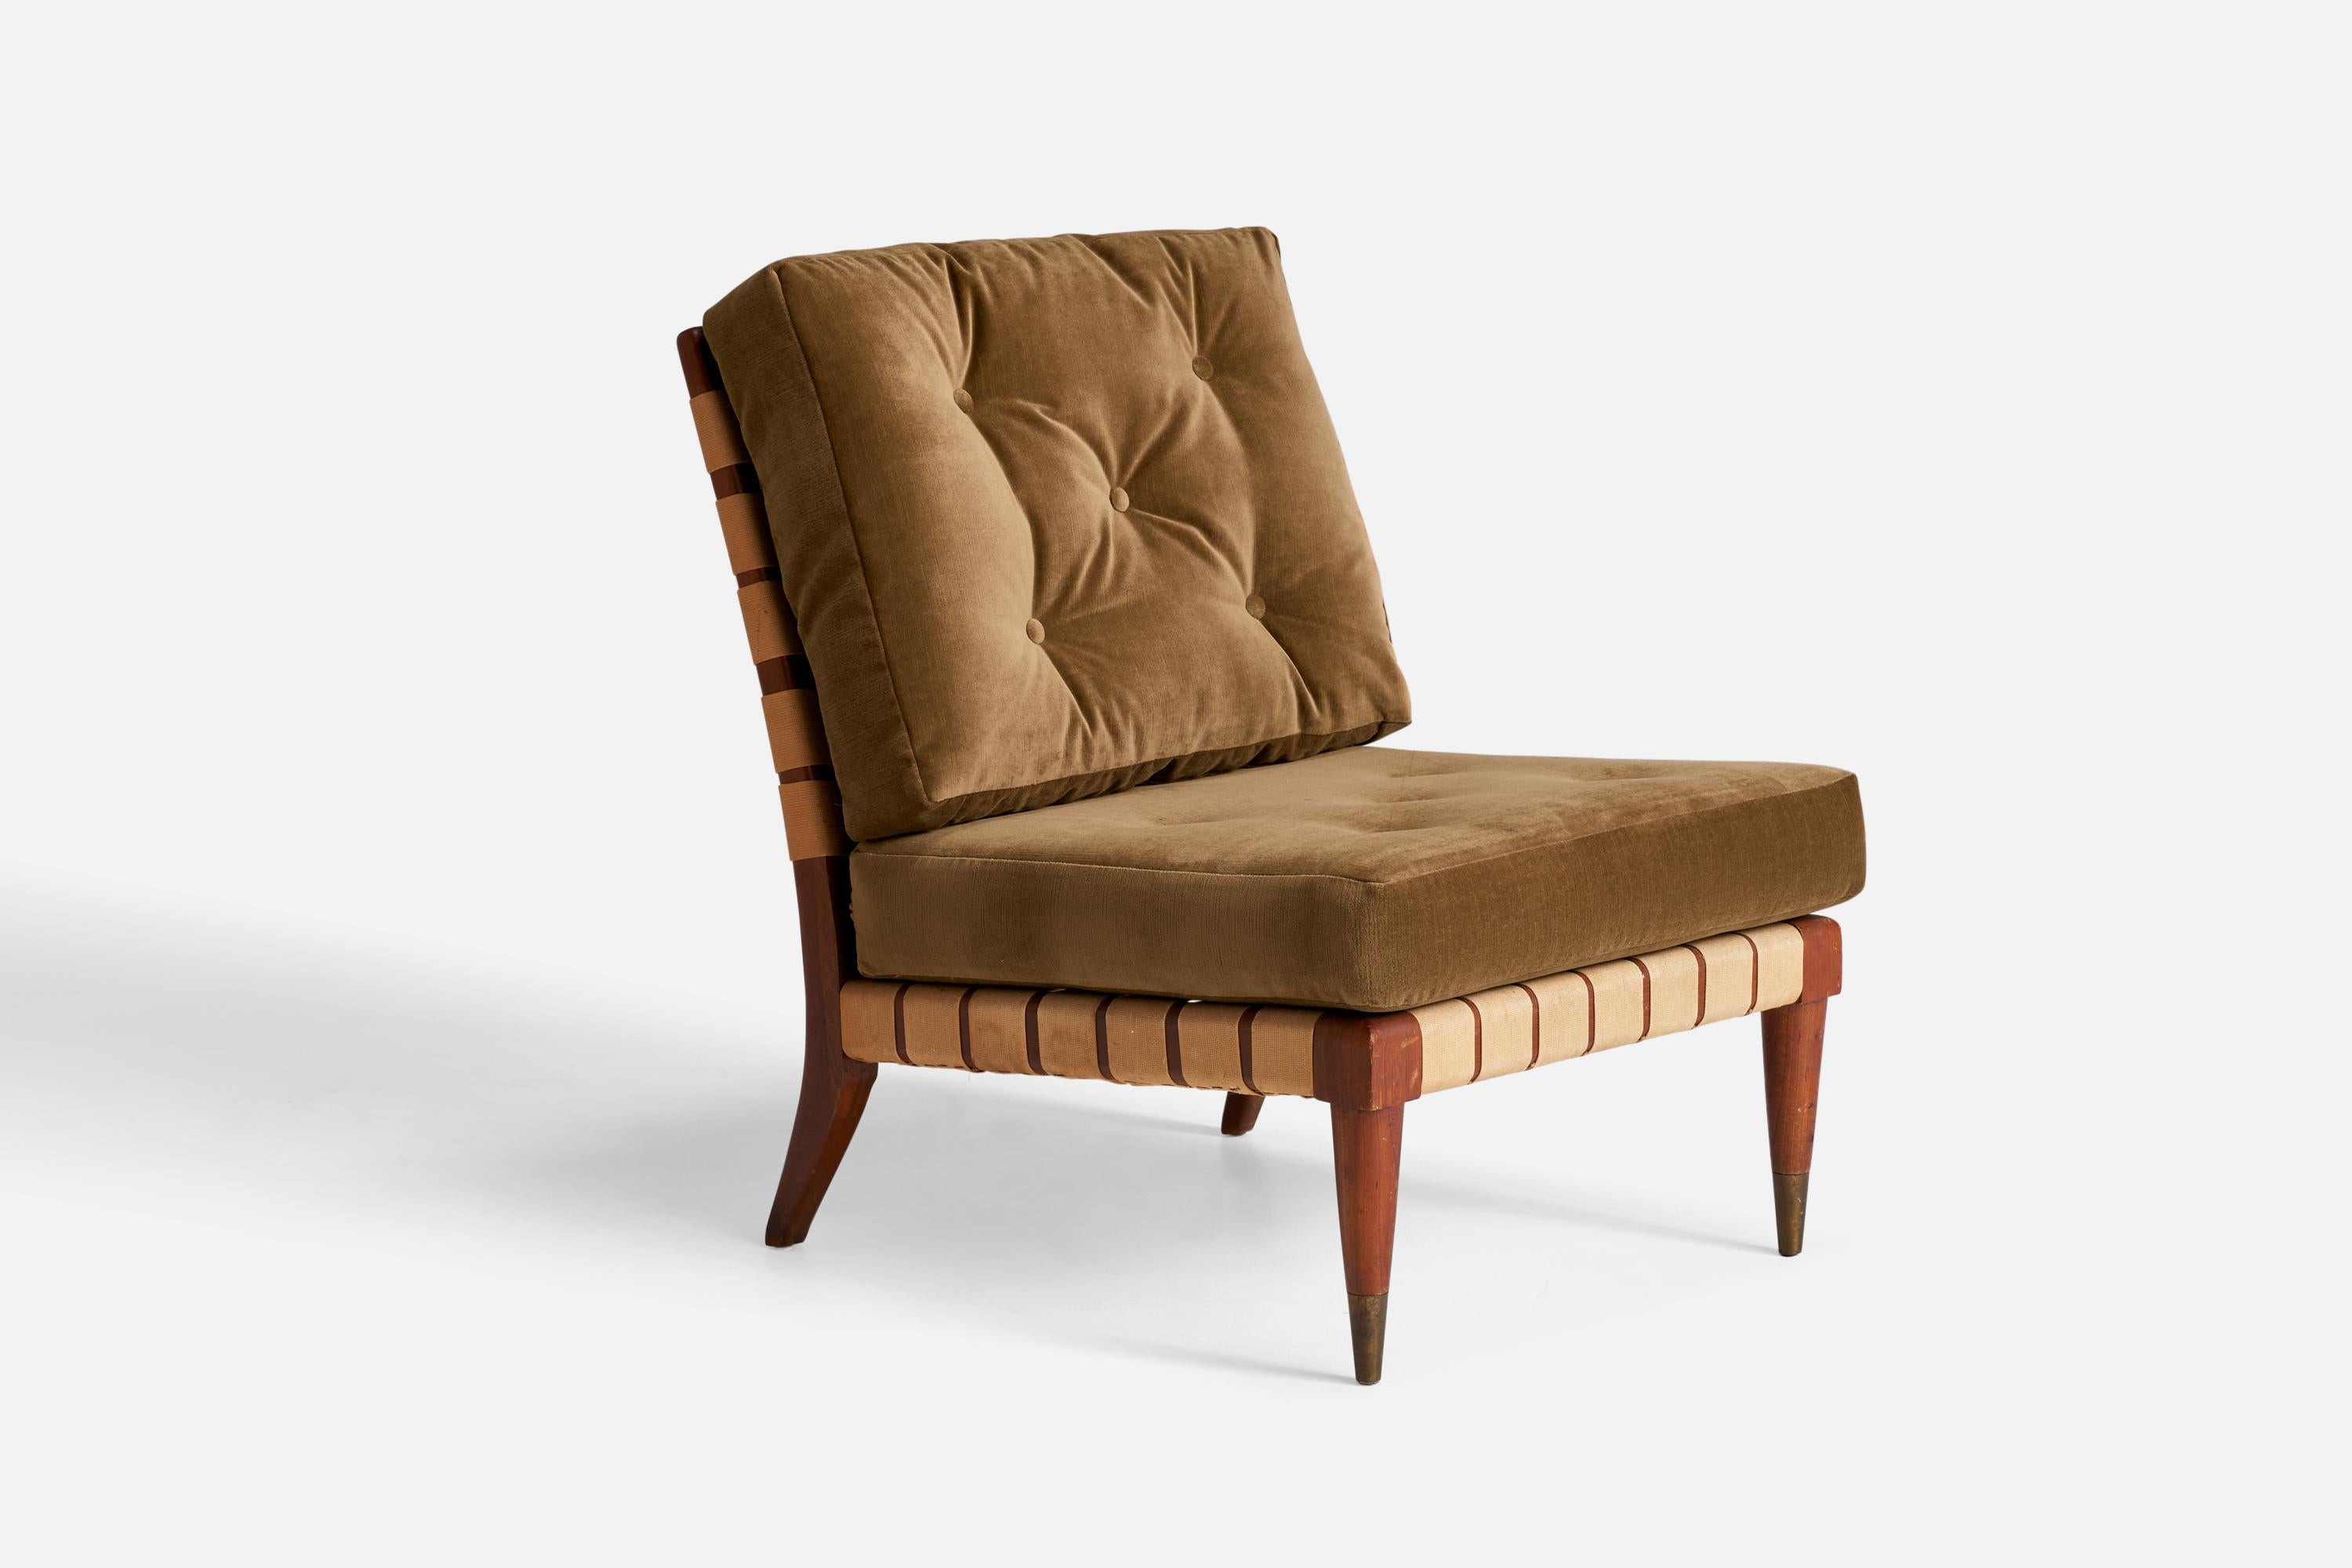 Ein Sessel aus Nussbaumholz, Baumwollband und grün-braunem Samt, entworfen und hergestellt in den USA, 1940er Jahre.

Sitzhöhe 16